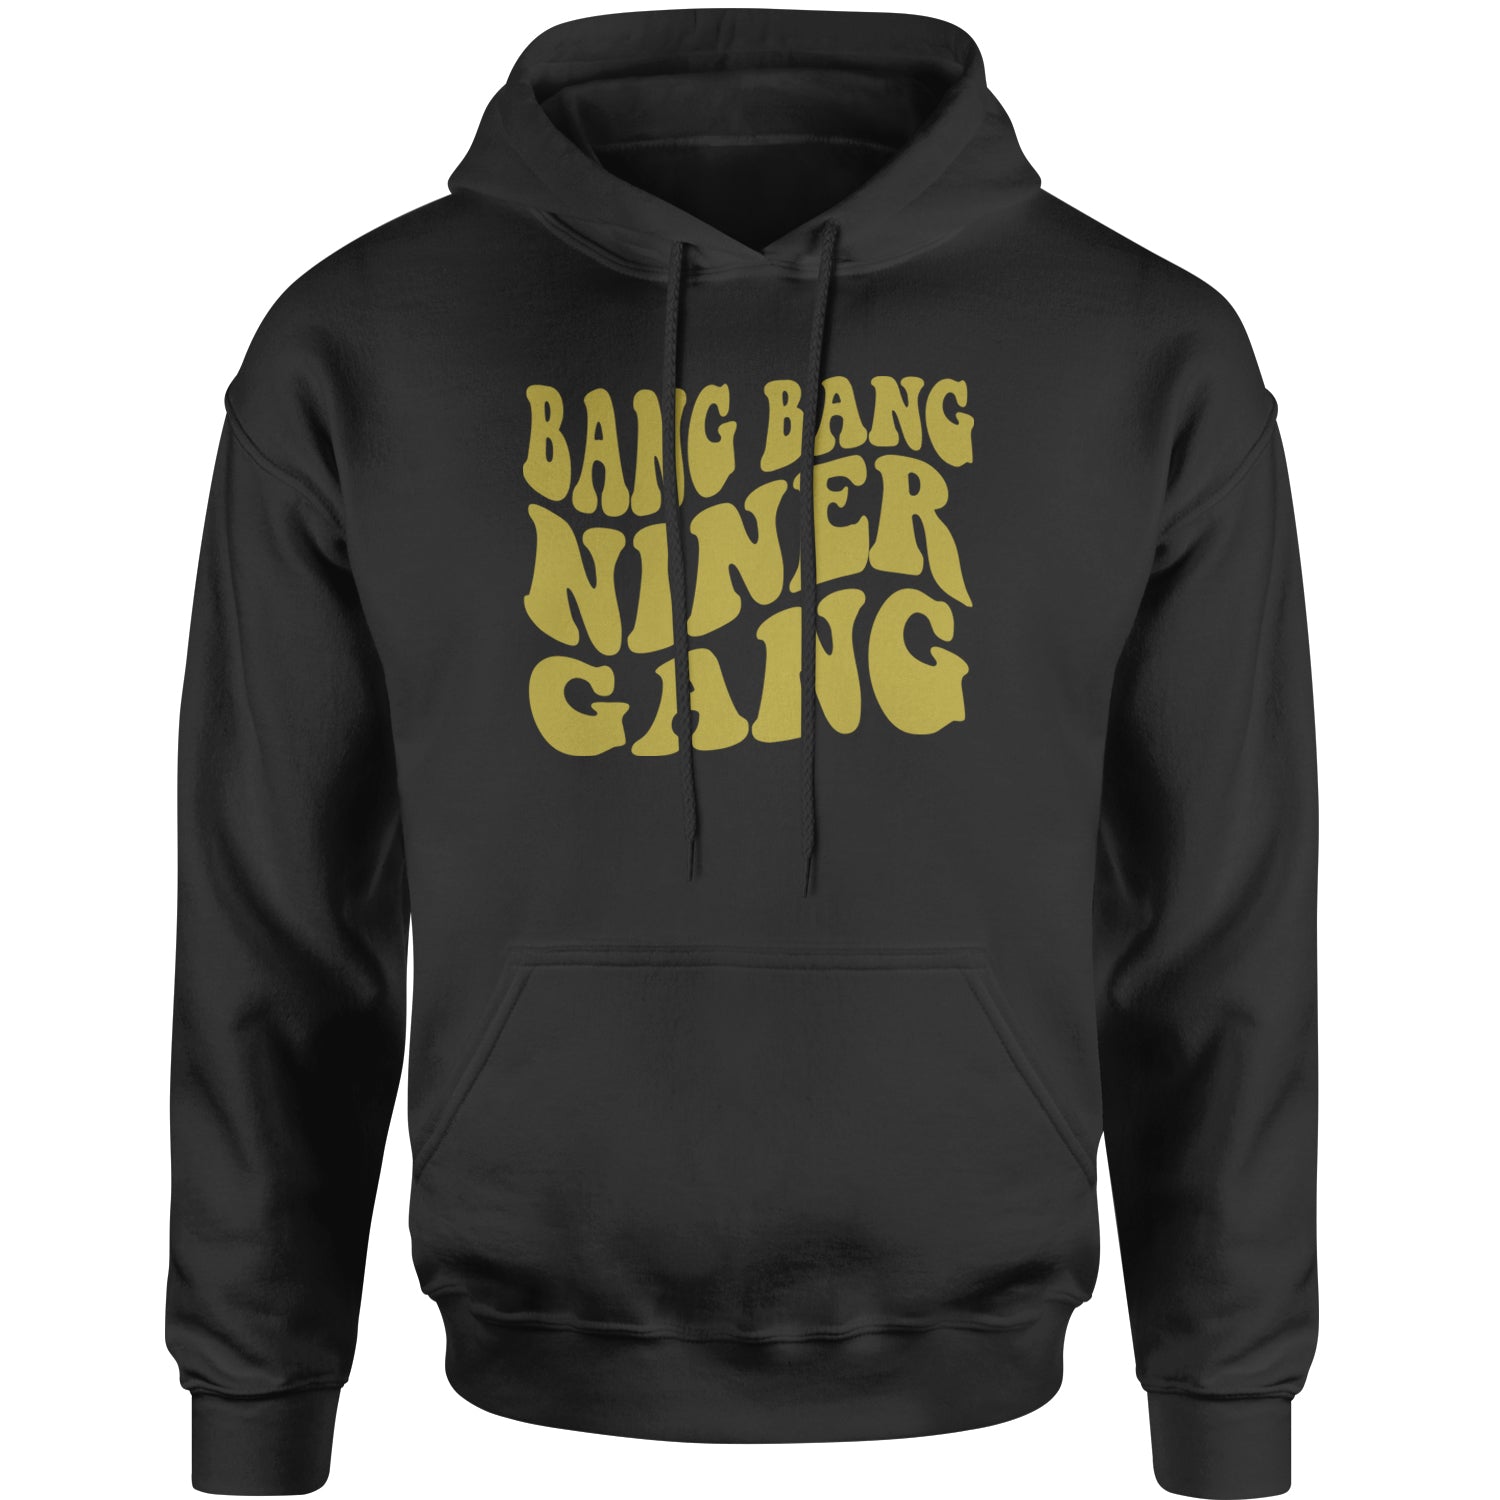 WAVE Bang Bang Niner Gang San Francisco Adult Hoodie Sweatshirt